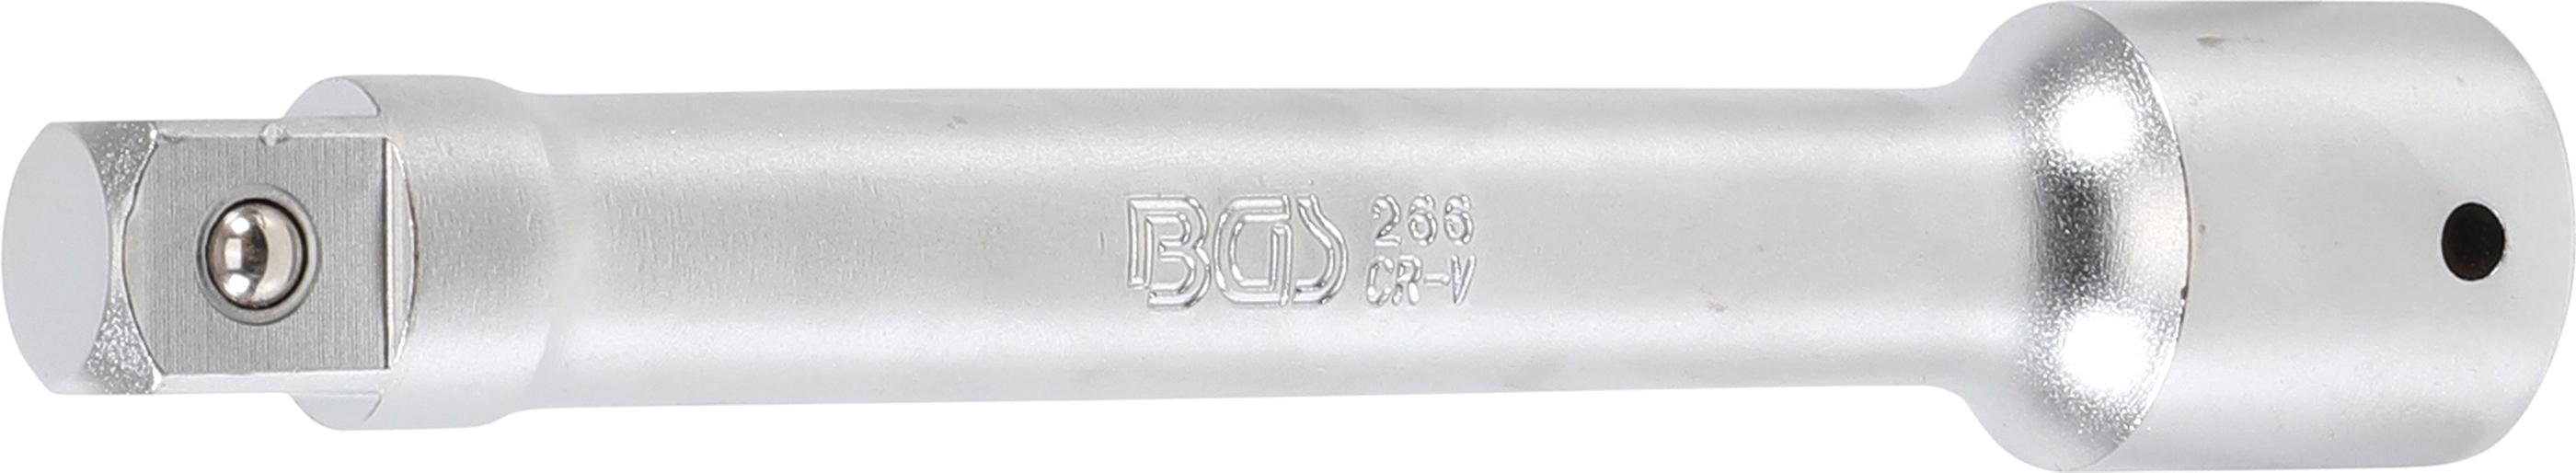 BGS technic Ratschenringschlüssel Verlängerung, 20 mm (3/4), 200 mm